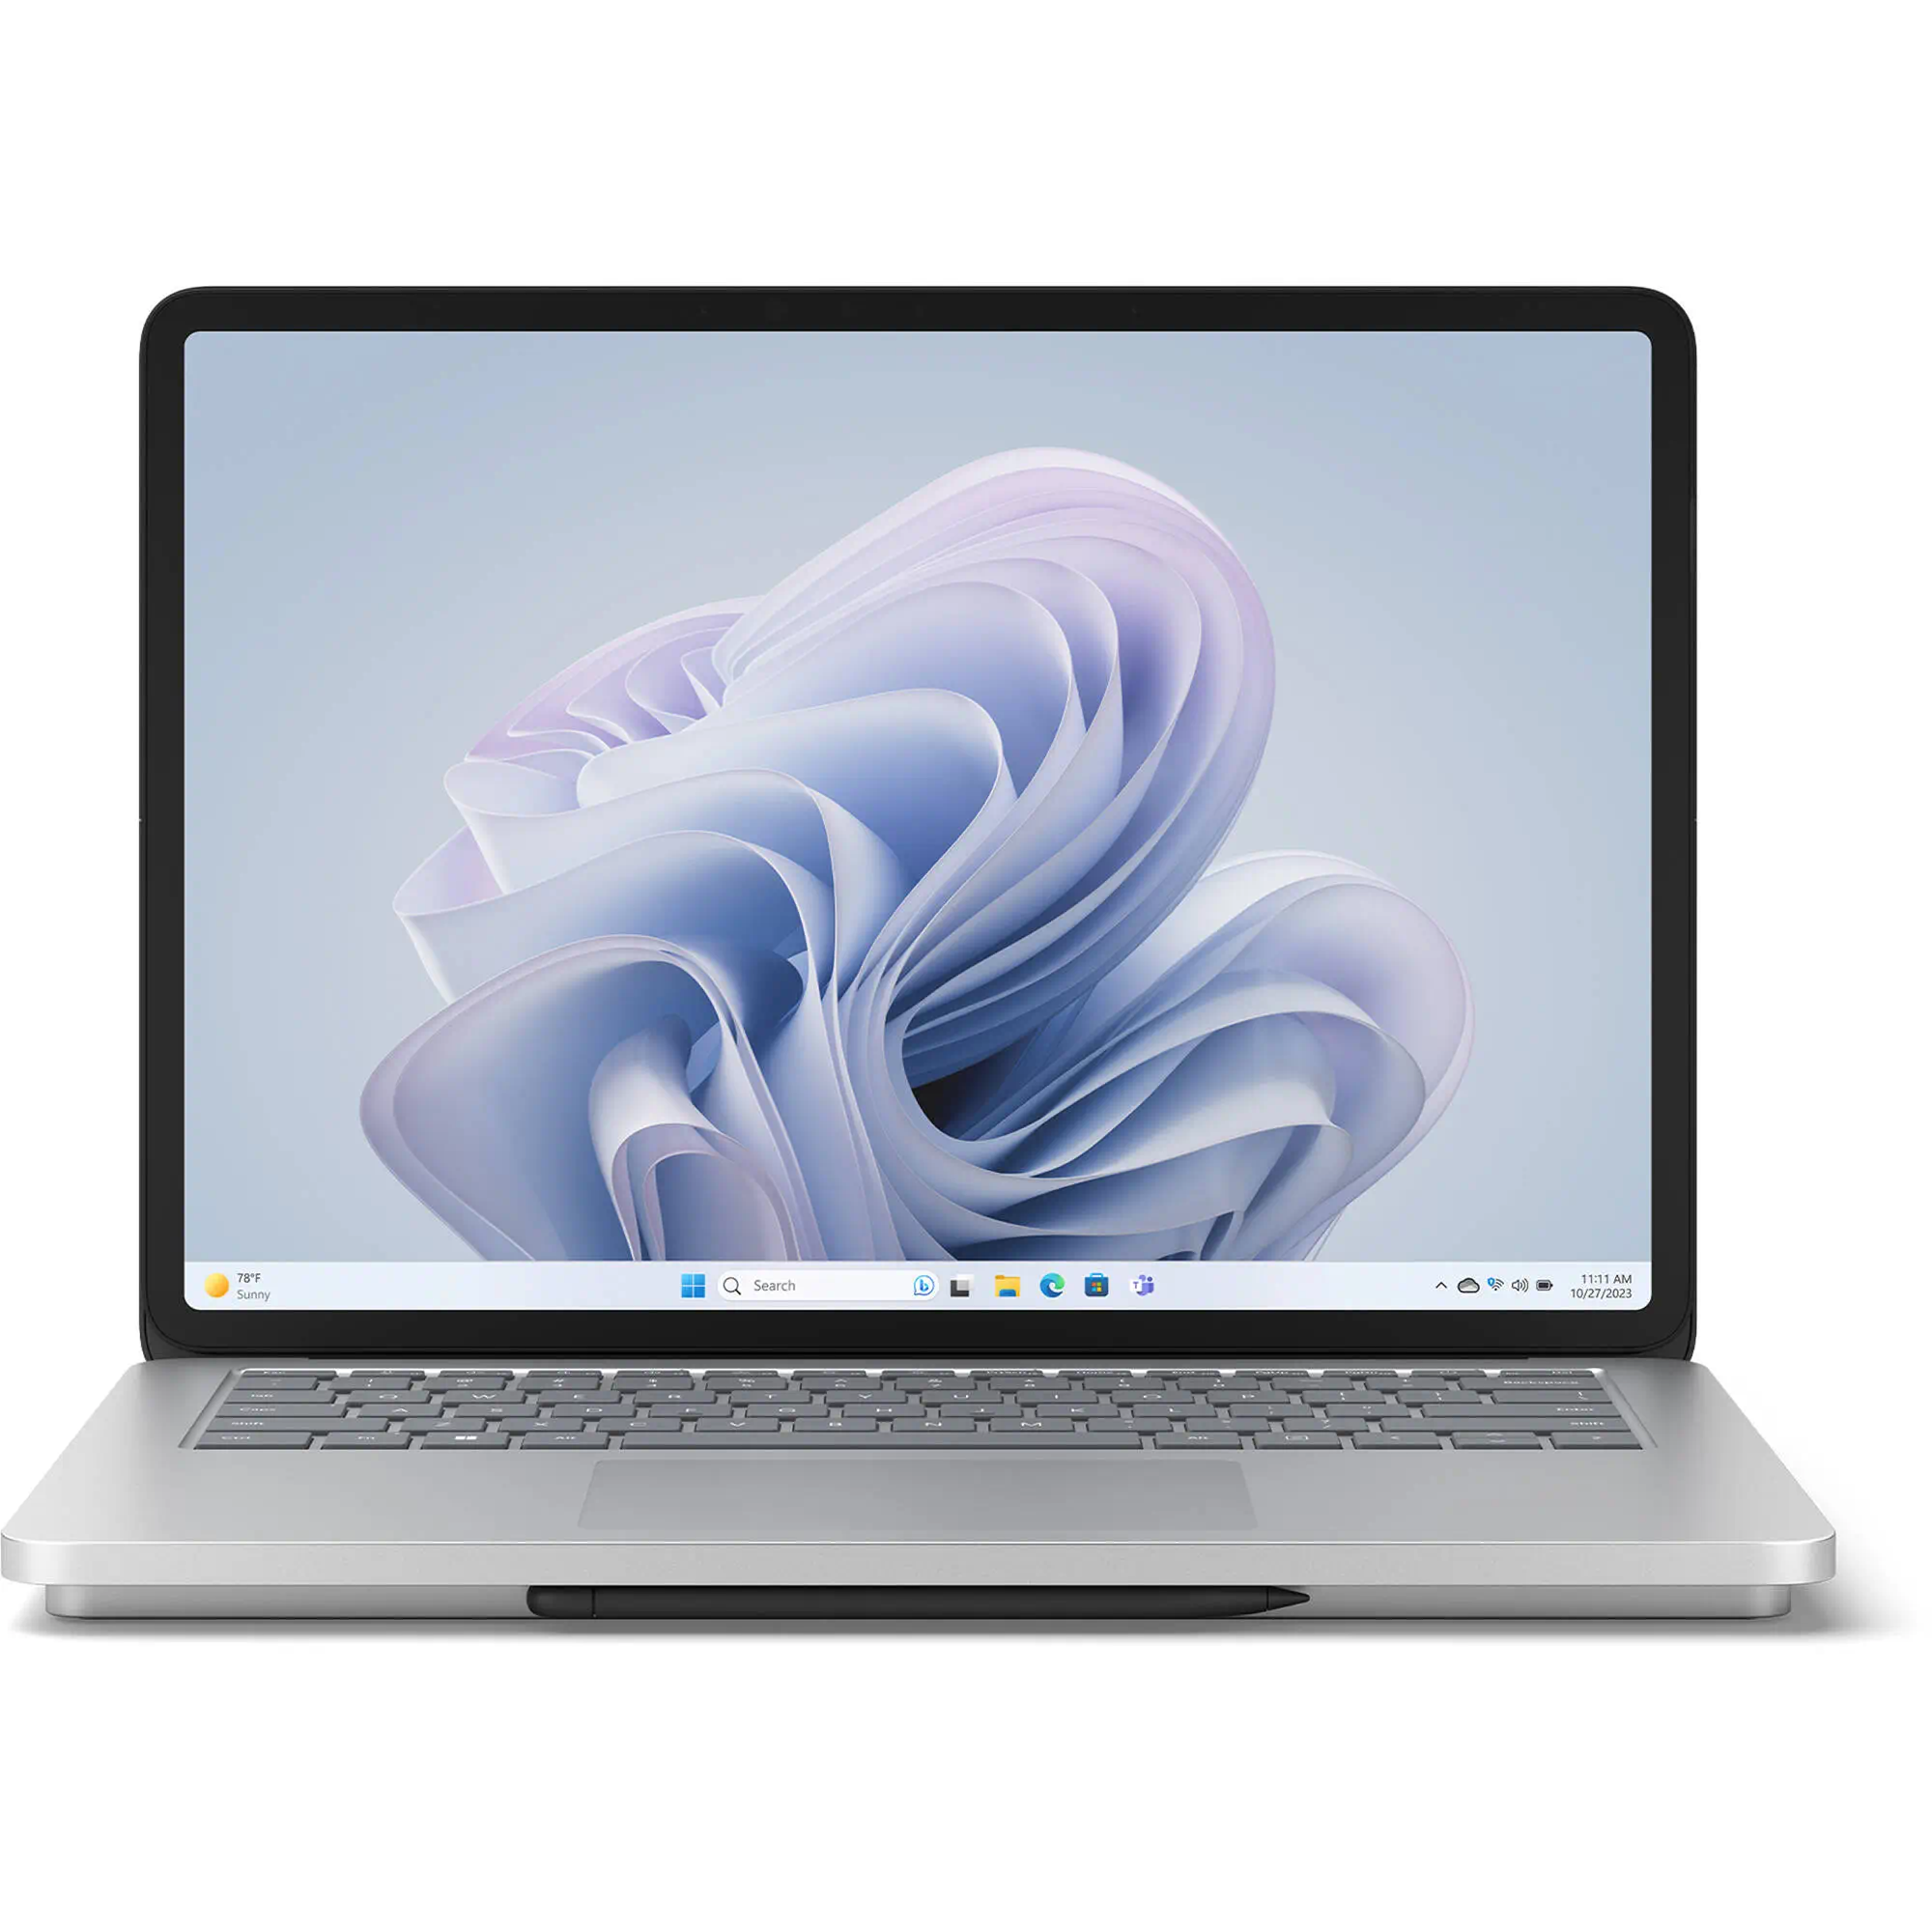 قیمت خرید لپ تاپ های مایکروسافت + گارانتی رسمی | فروشگاه سافتپل